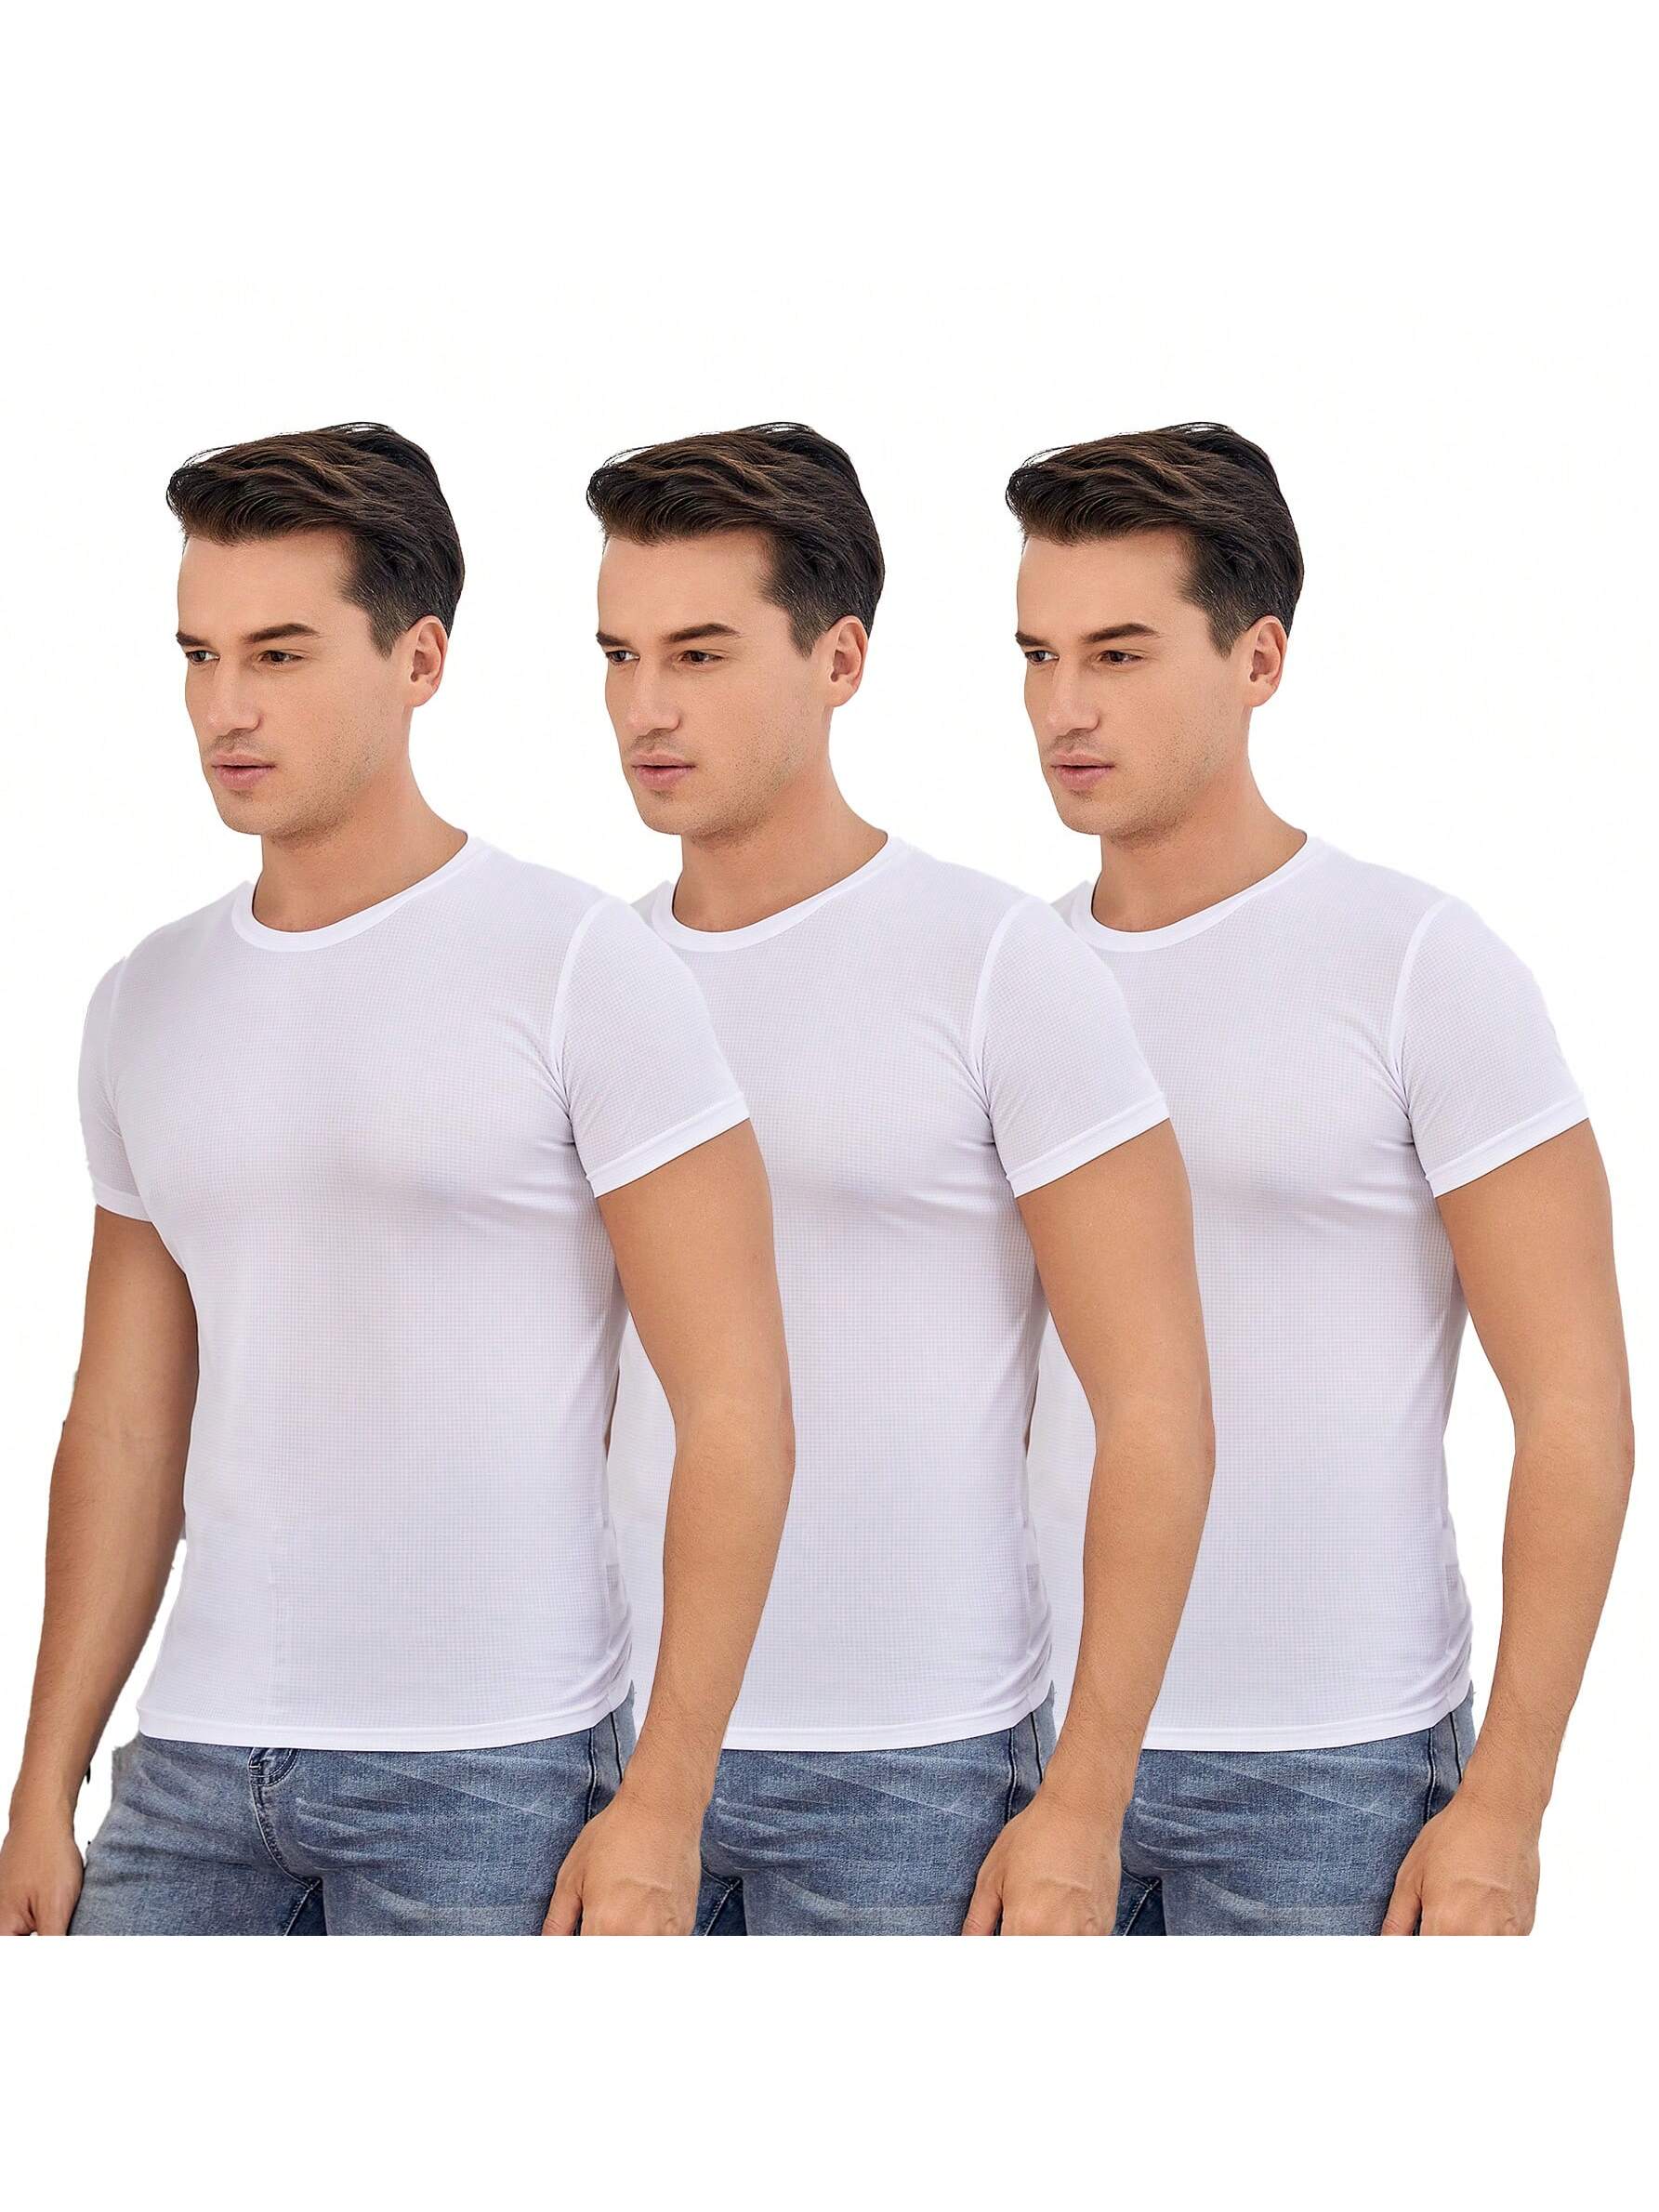 2 шт. комплект свободных футболок с короткими рукавами для тренировок и бега для мужчин, белый